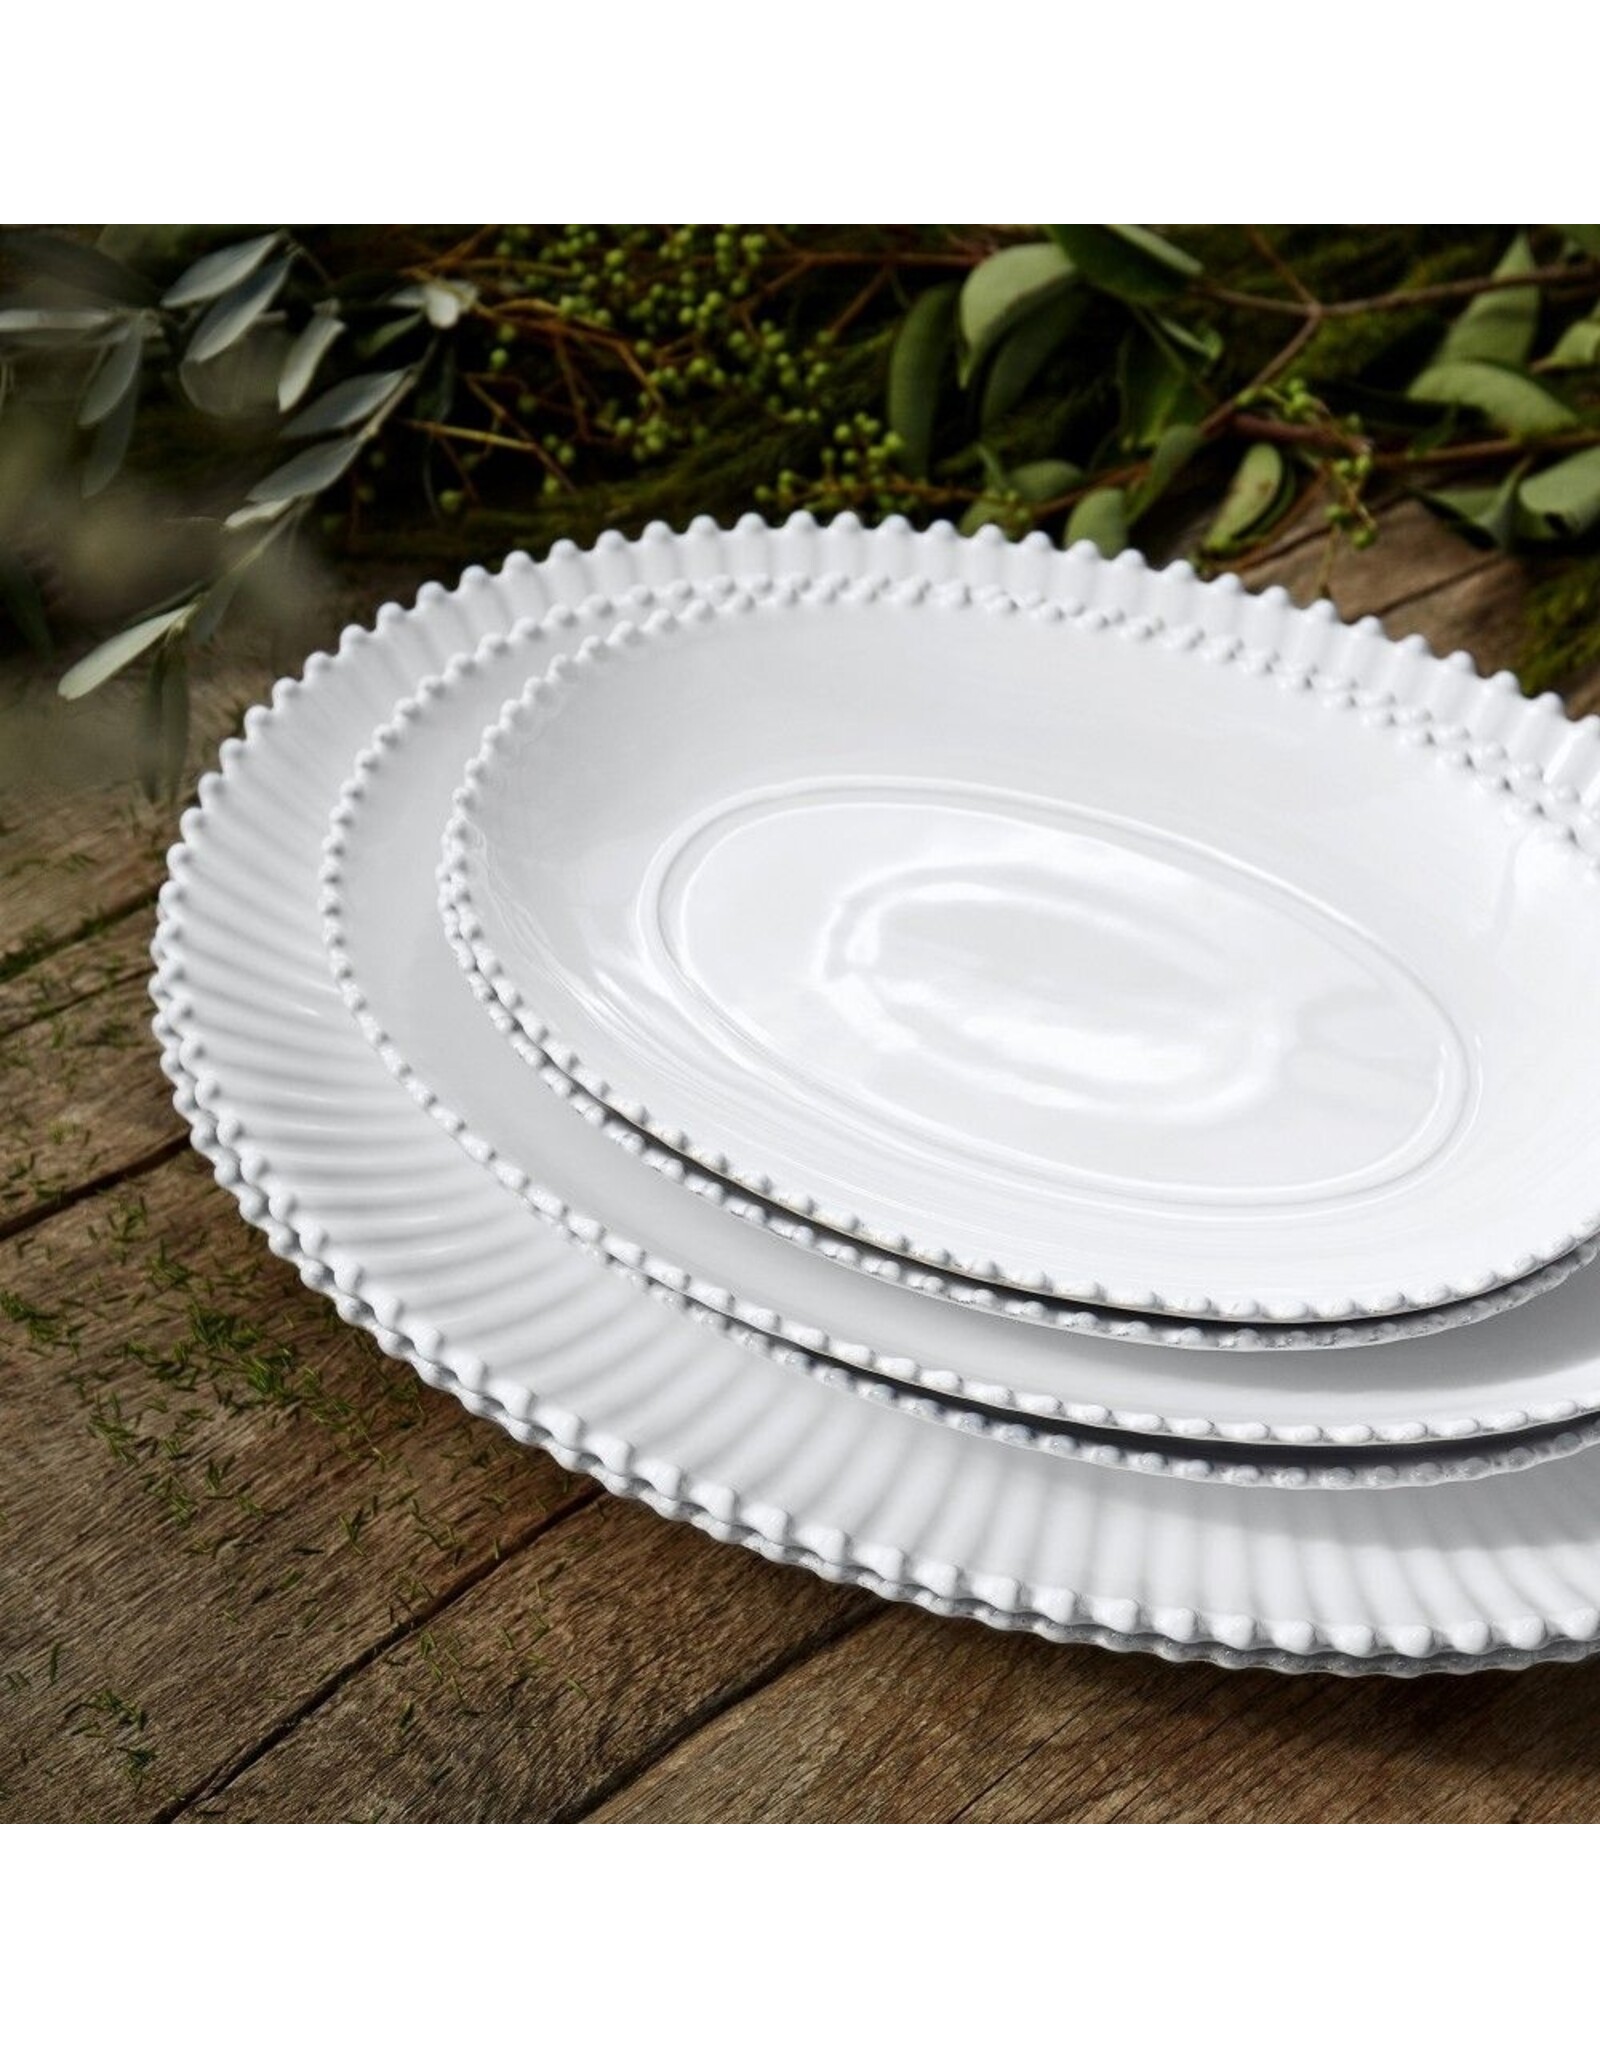 Oval platter 50cm Pearl white